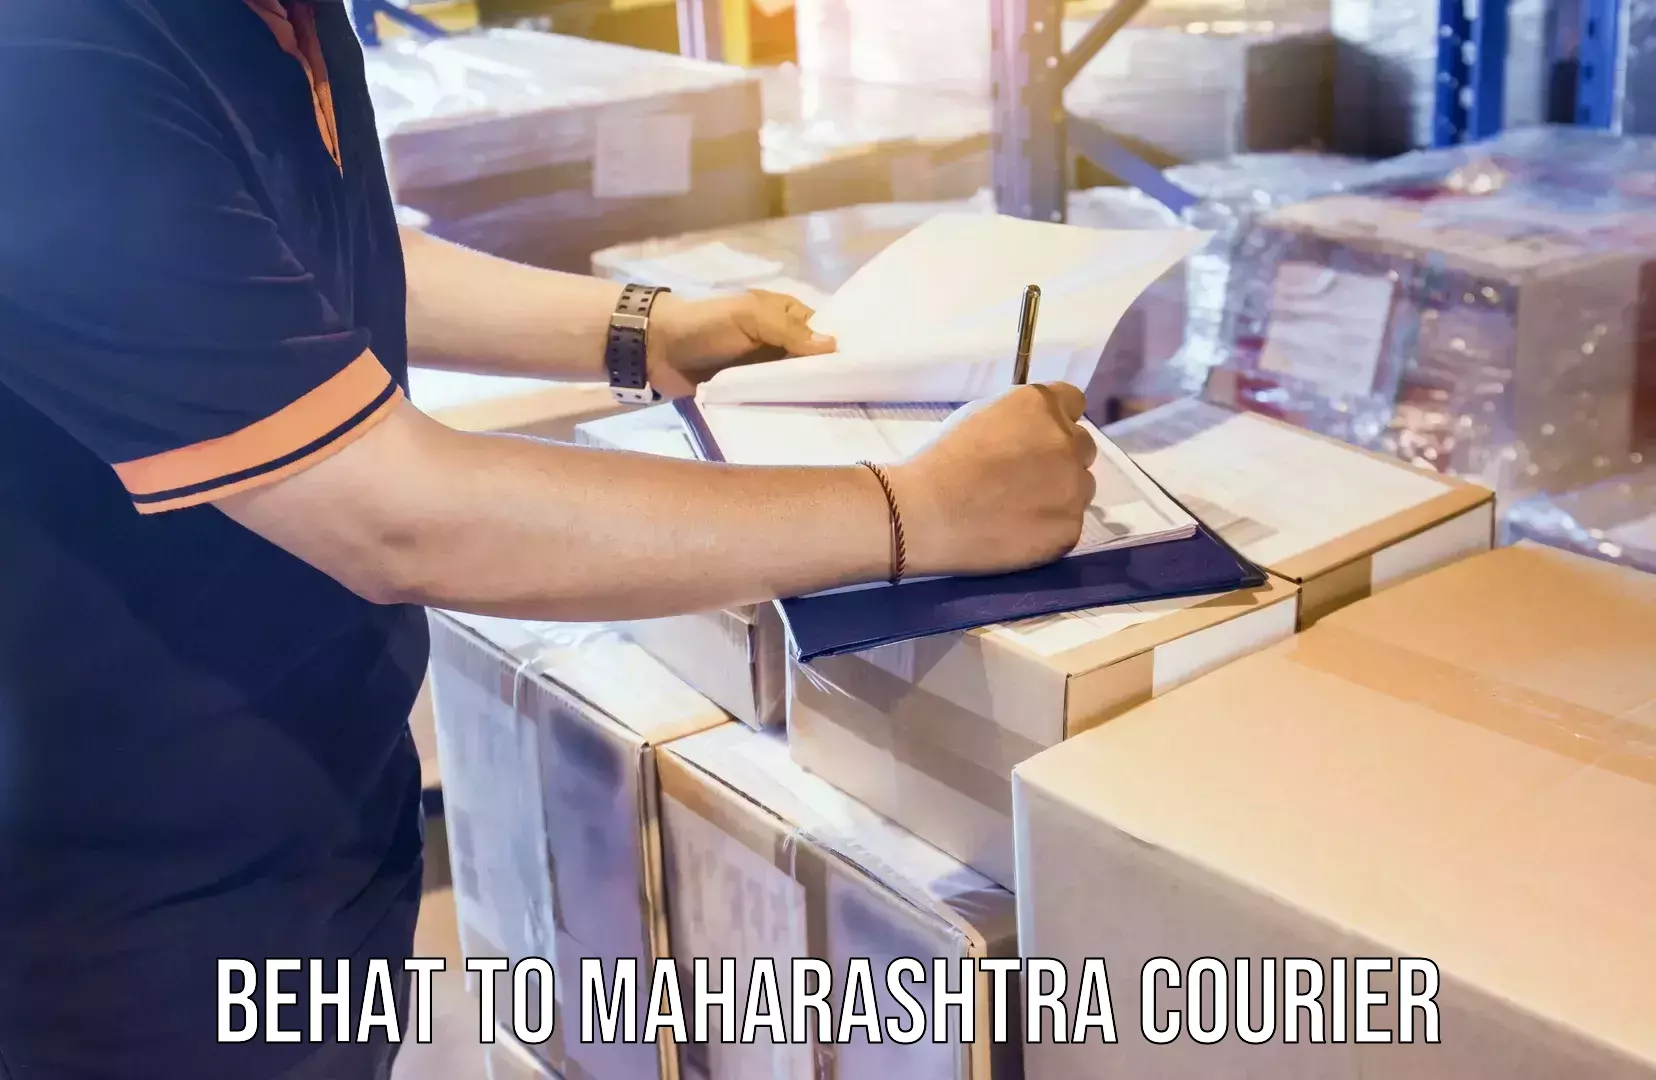 Door-to-door freight service Behat to Maharashtra